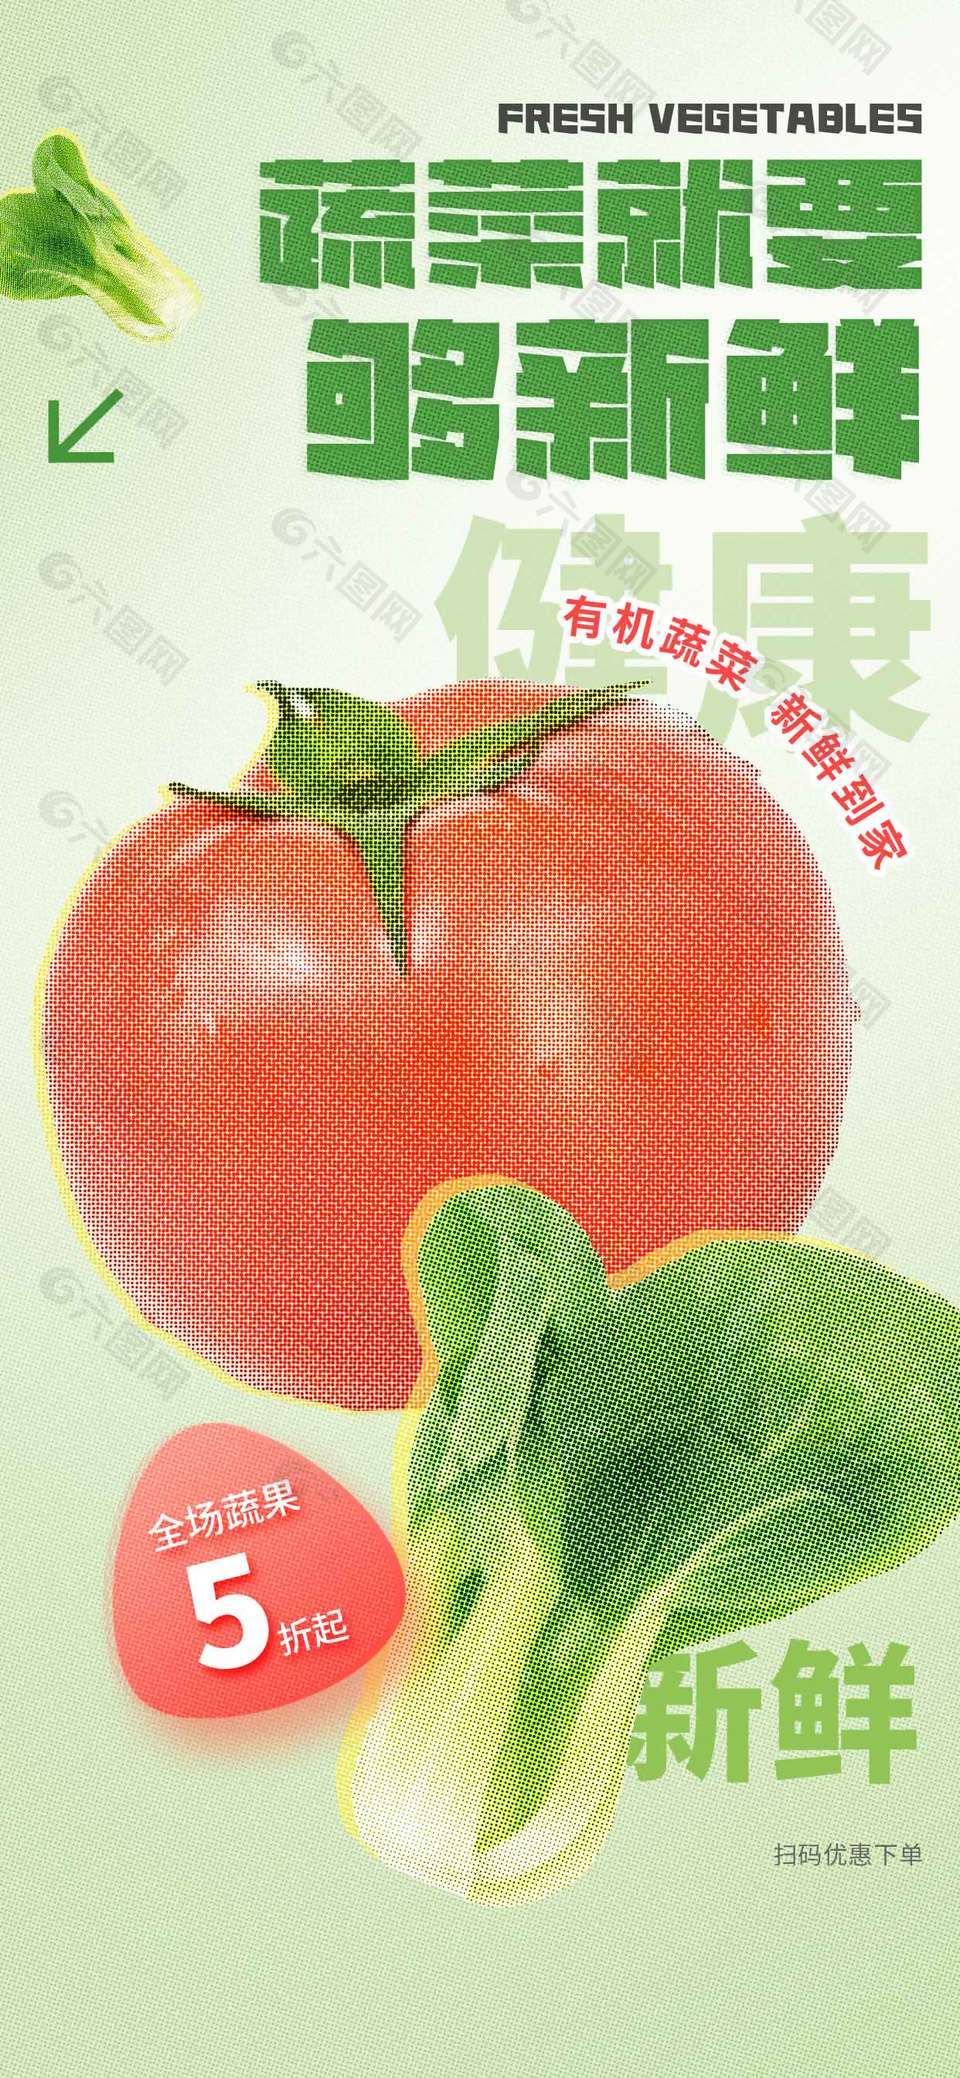 新鲜果蔬创意上市海报宣传